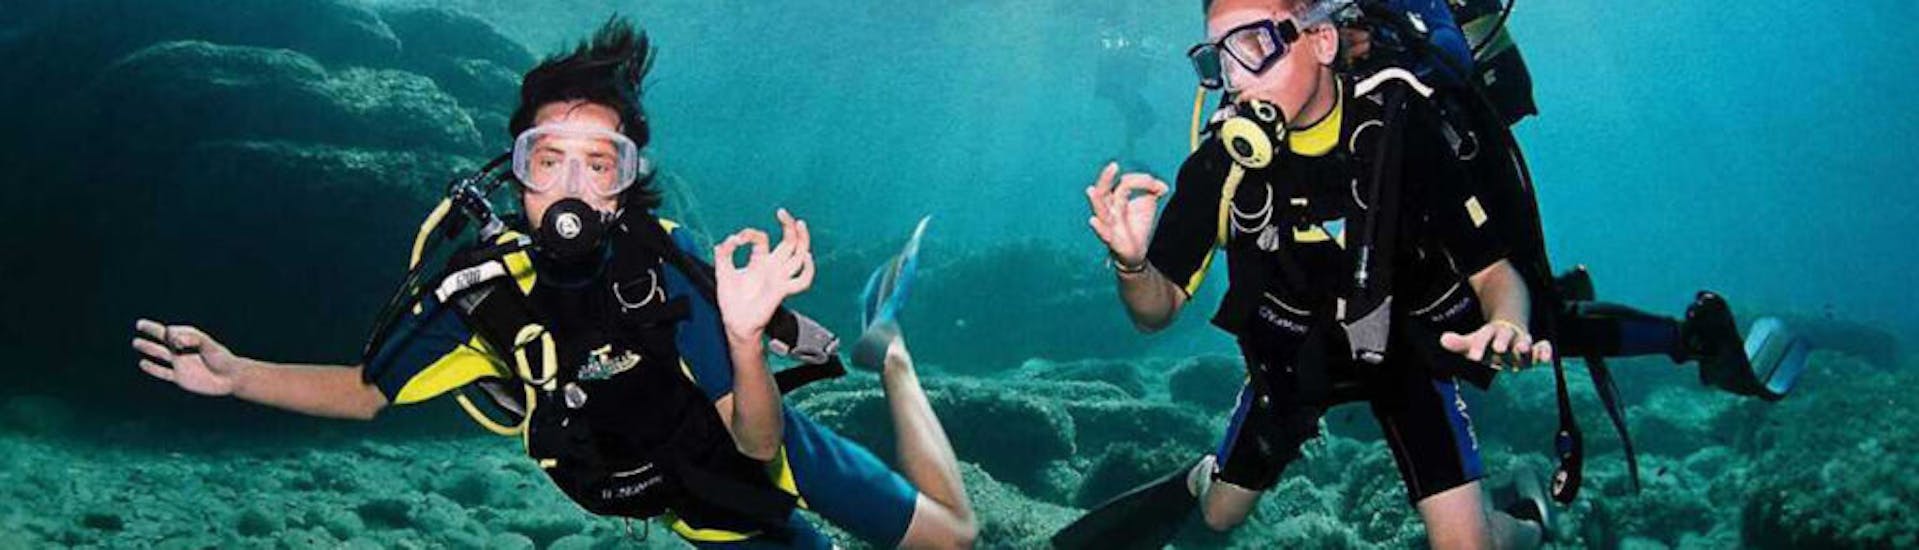 Deux personnes faisant du langage des signes sous l'eau pendant la plongée sous-marine lors du Baptême de plongée à Sant Antoni de Portmany à Ibiza pour Débutants avec Arenal Diving & Boat tours.